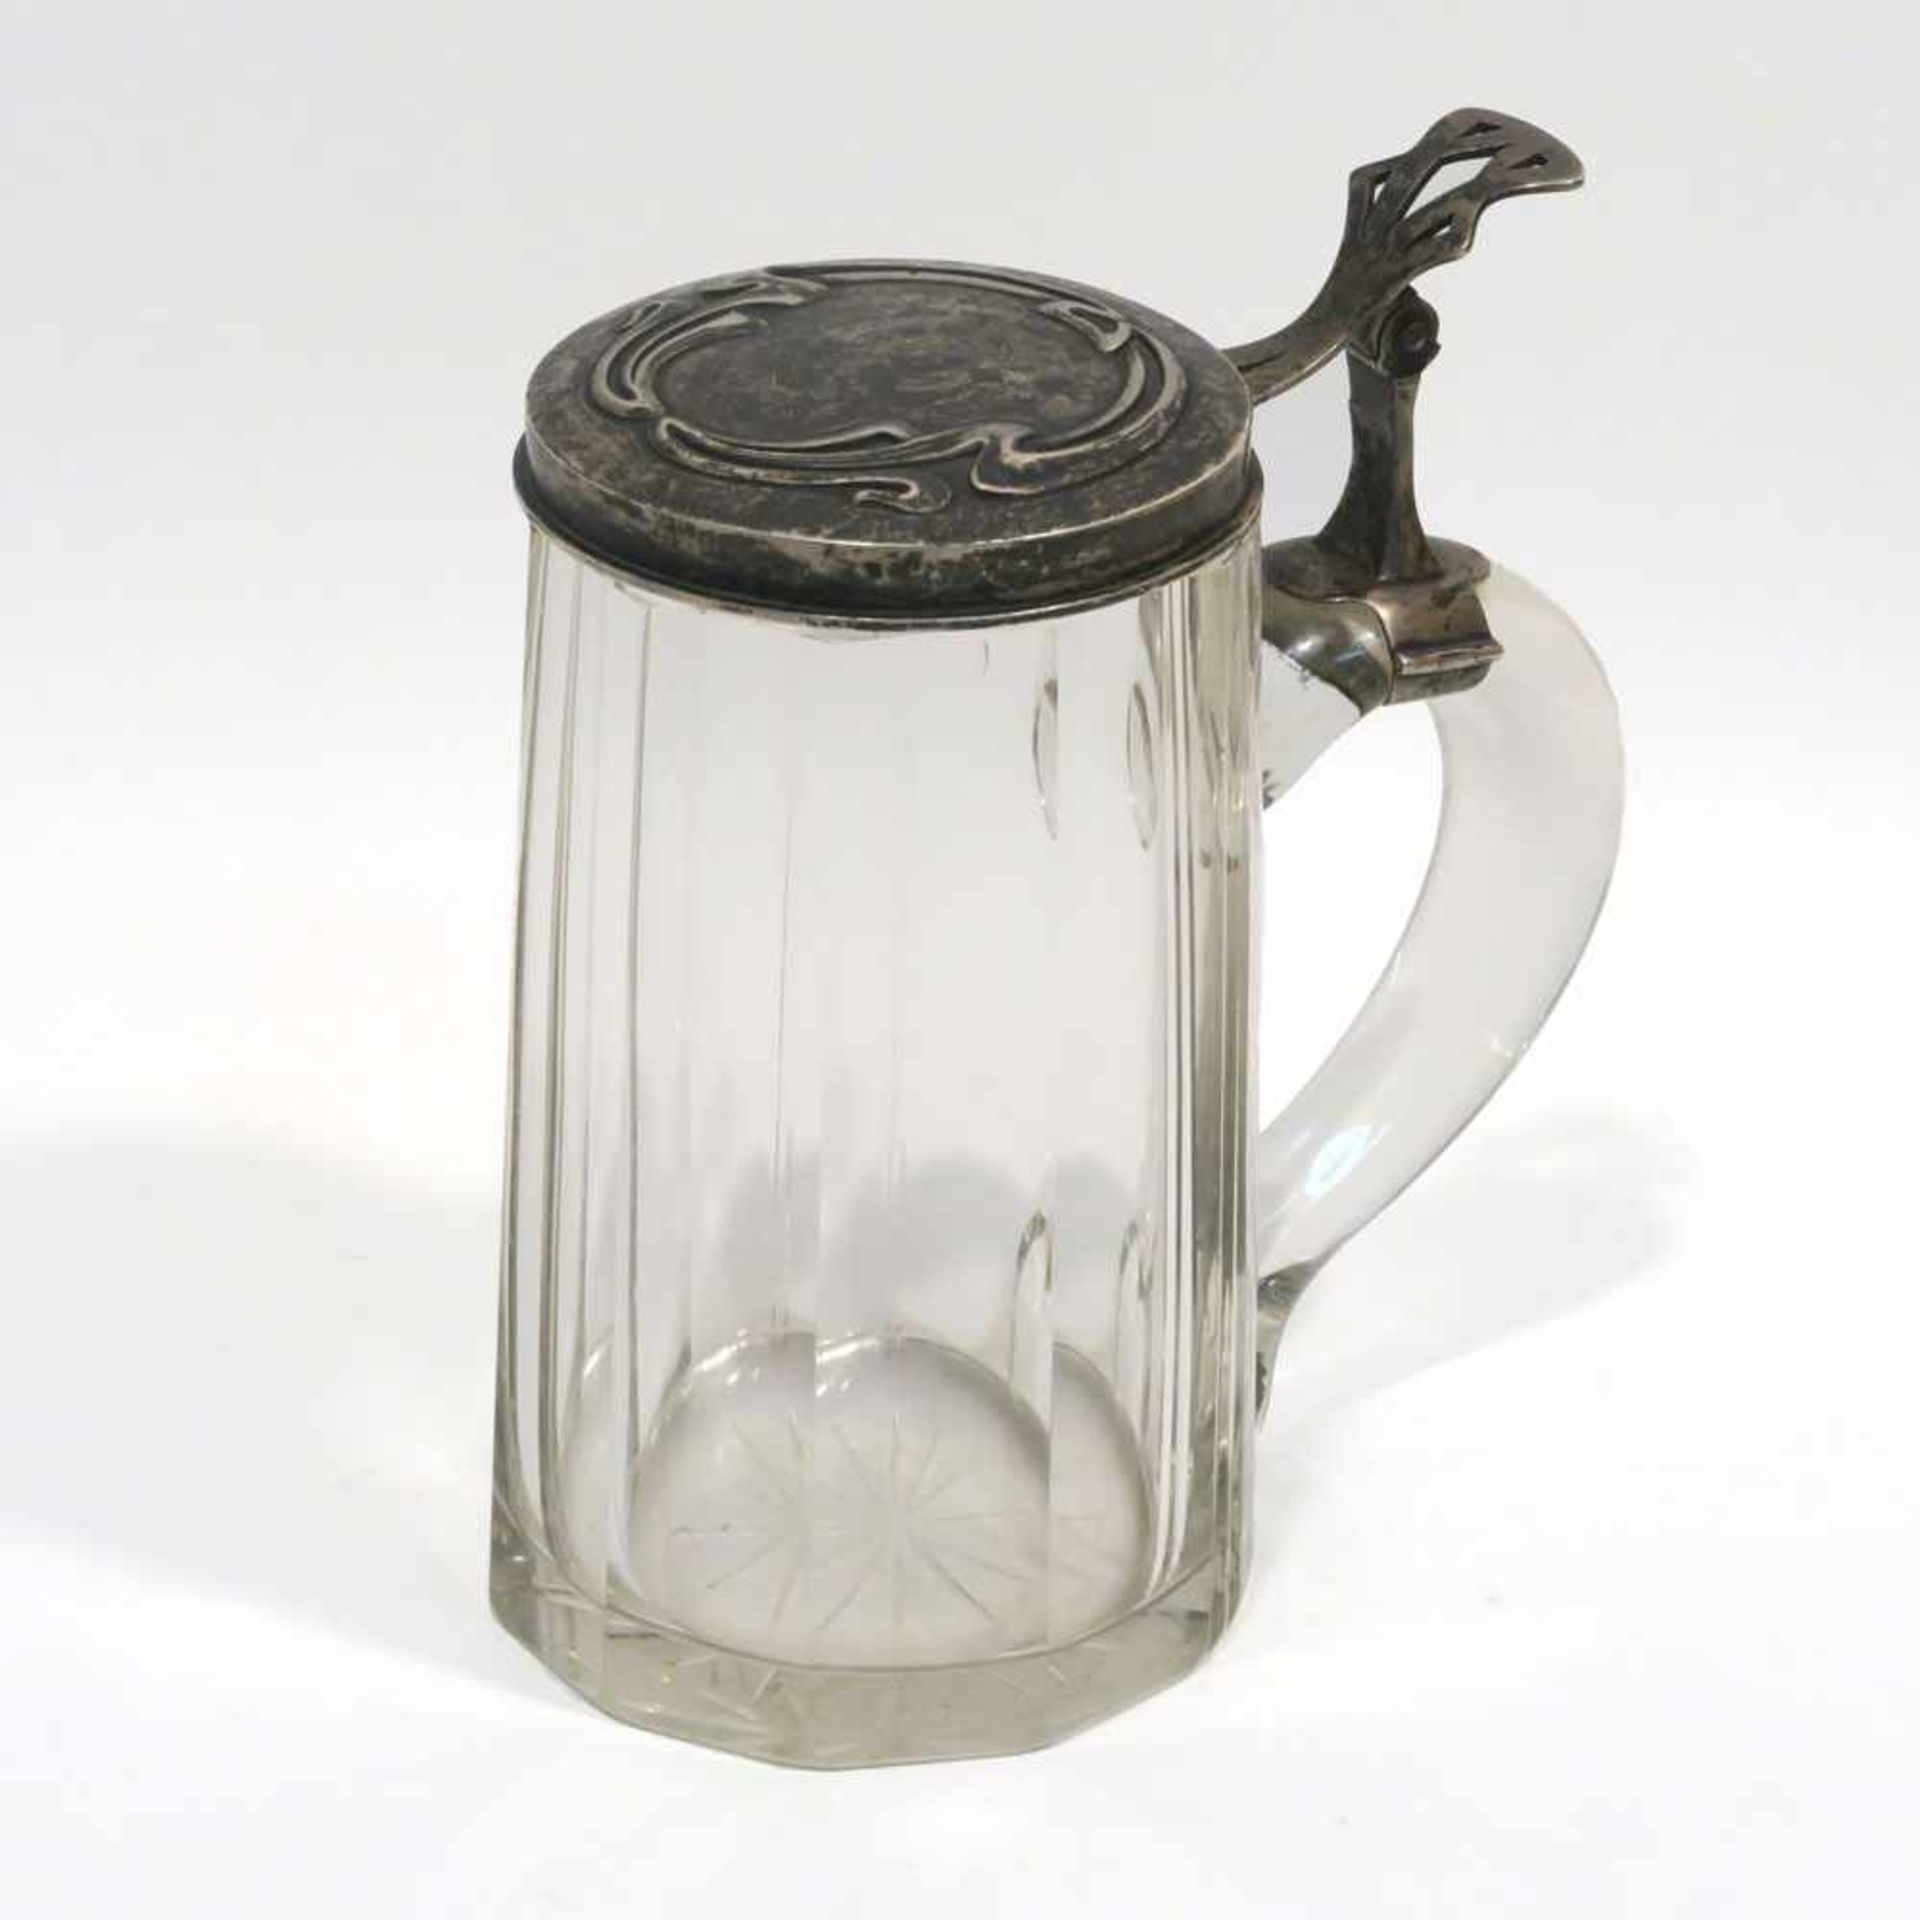 BierseidelUm 1900. Farbloses Glas, Silber. Leicht konische, facettierte Wandung. Silberdeckel mit